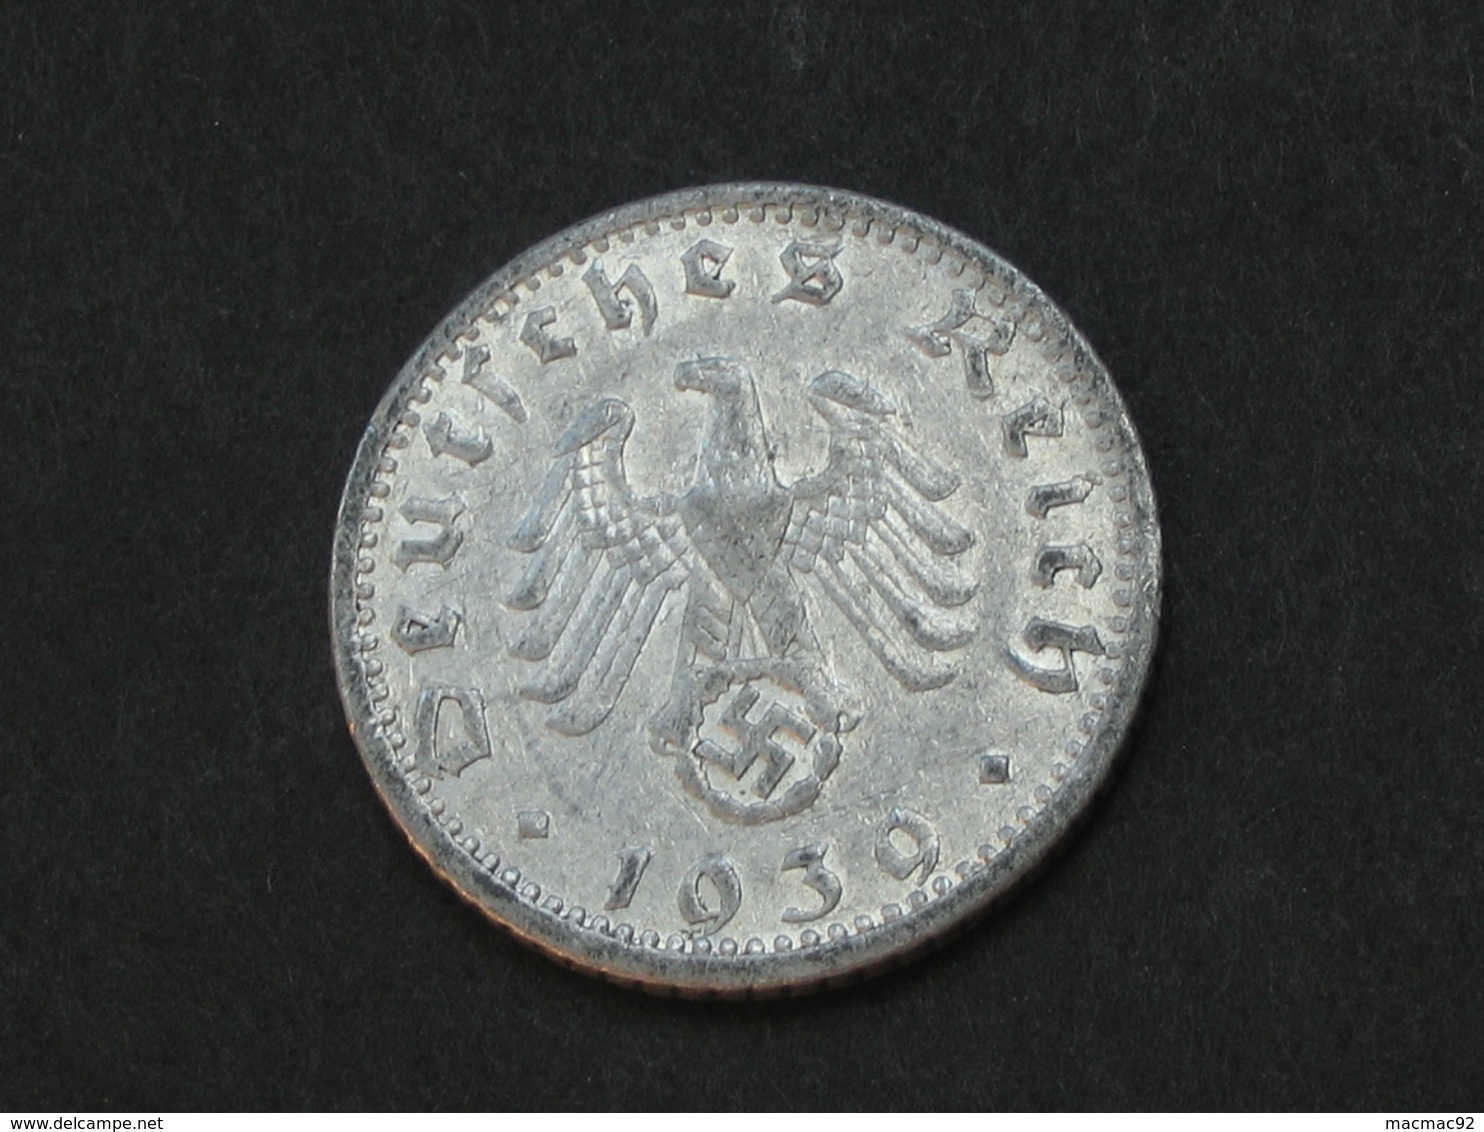 50 Reichspfennig 1939 F - Germany- Allemagne 3 Eme Reich   **** EN ACHAT IMMEDIAT **** - 50 Reichspfennig